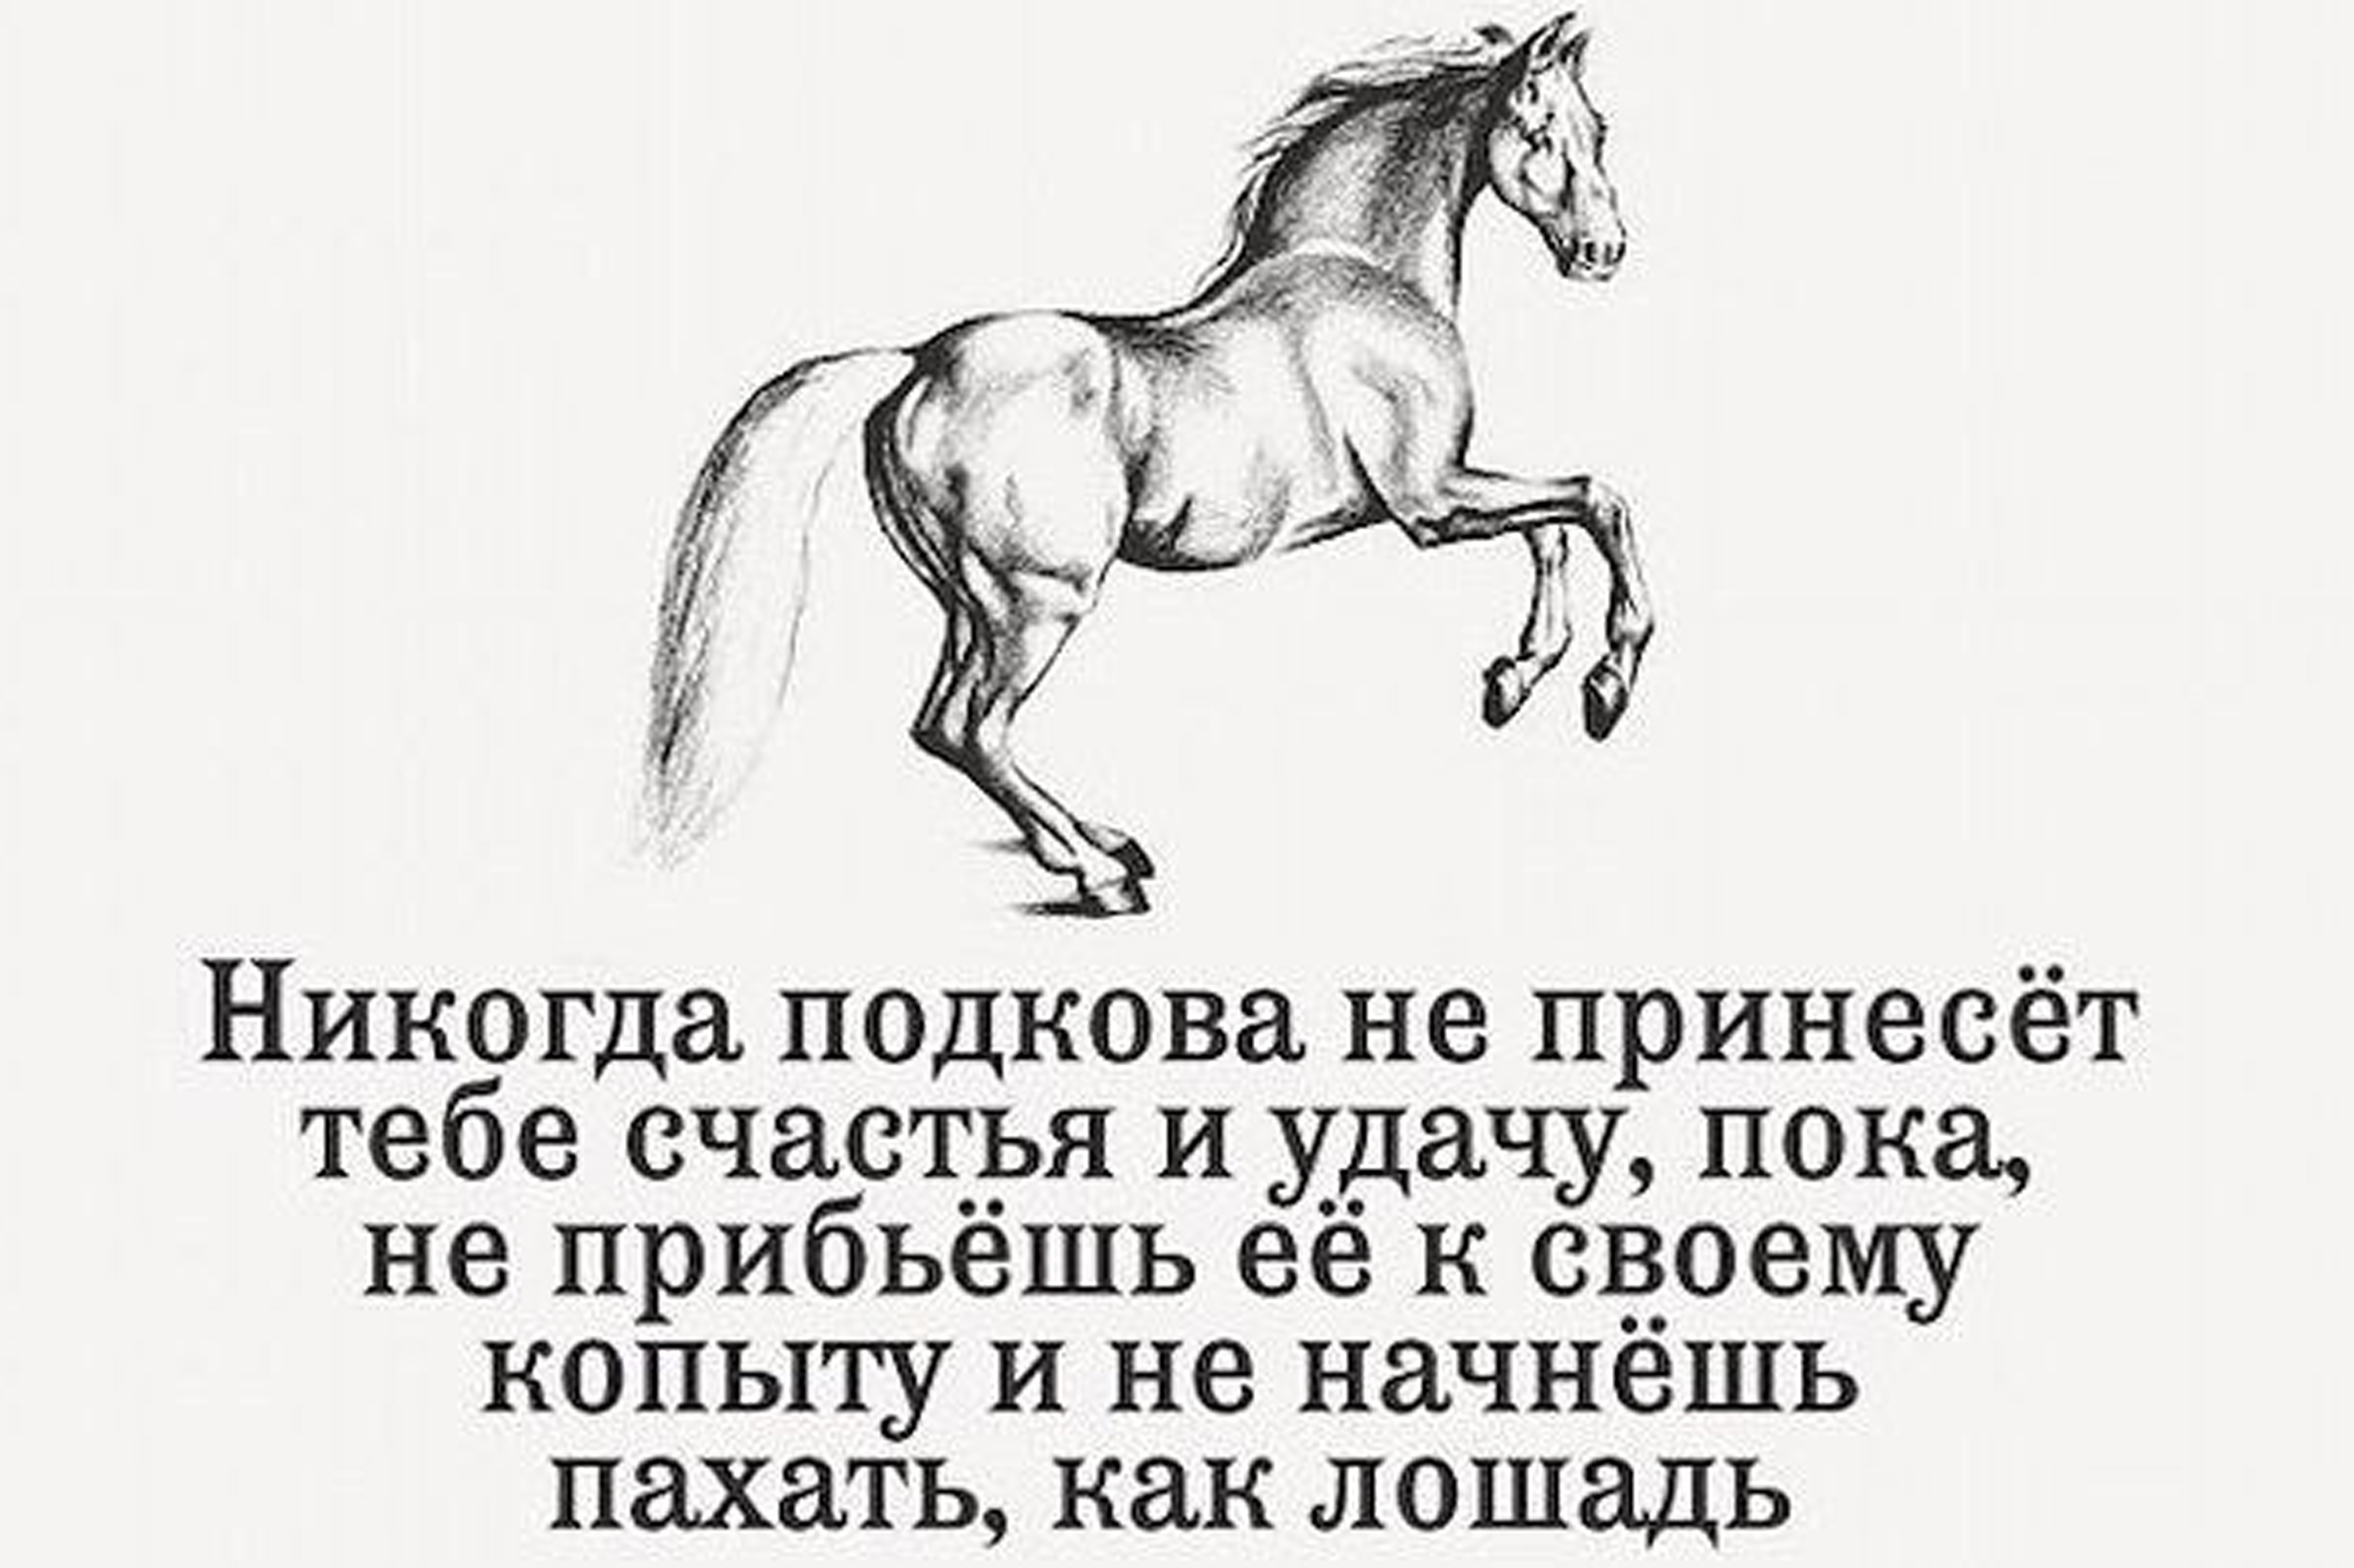 Фразы про лошадей